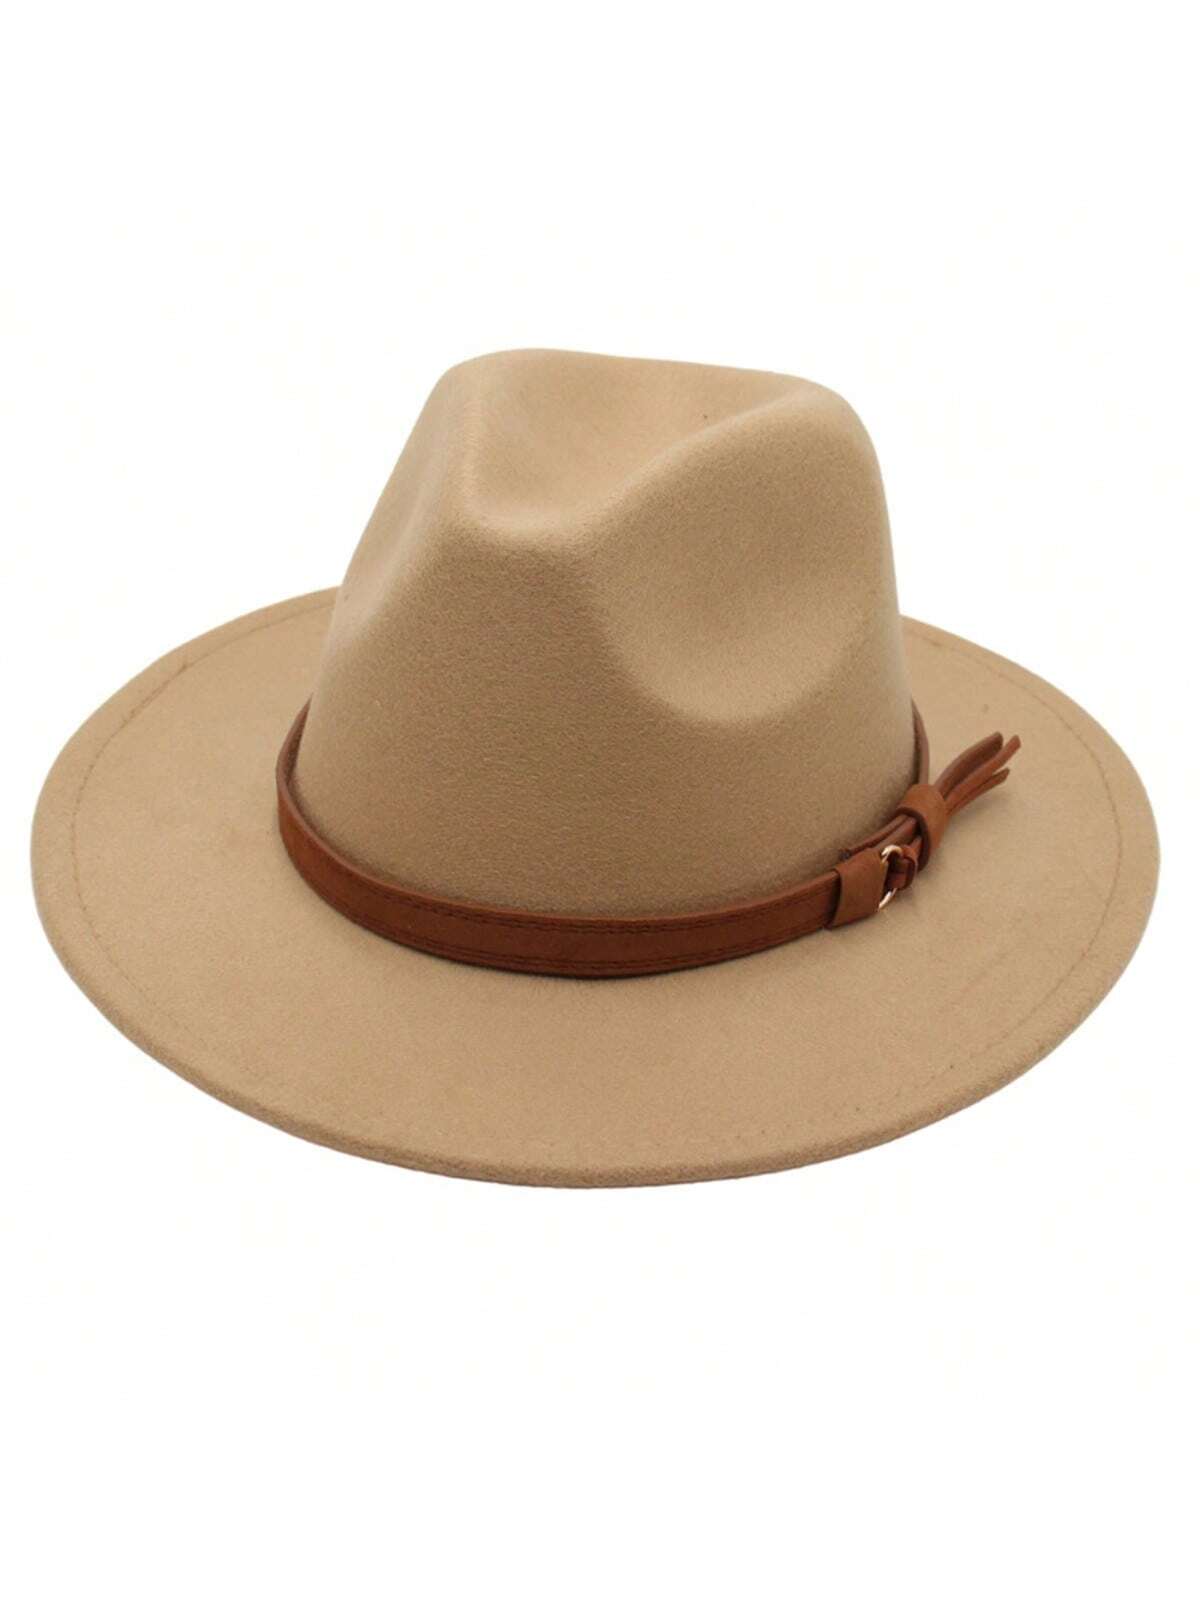 1 шт. черная шляпа Fedora в британском стиле с пряжкой ремня, хаки 40 шт маленькая шляпа декоративная мини шляпа новинка женская модная шляпа мини шляпа декор